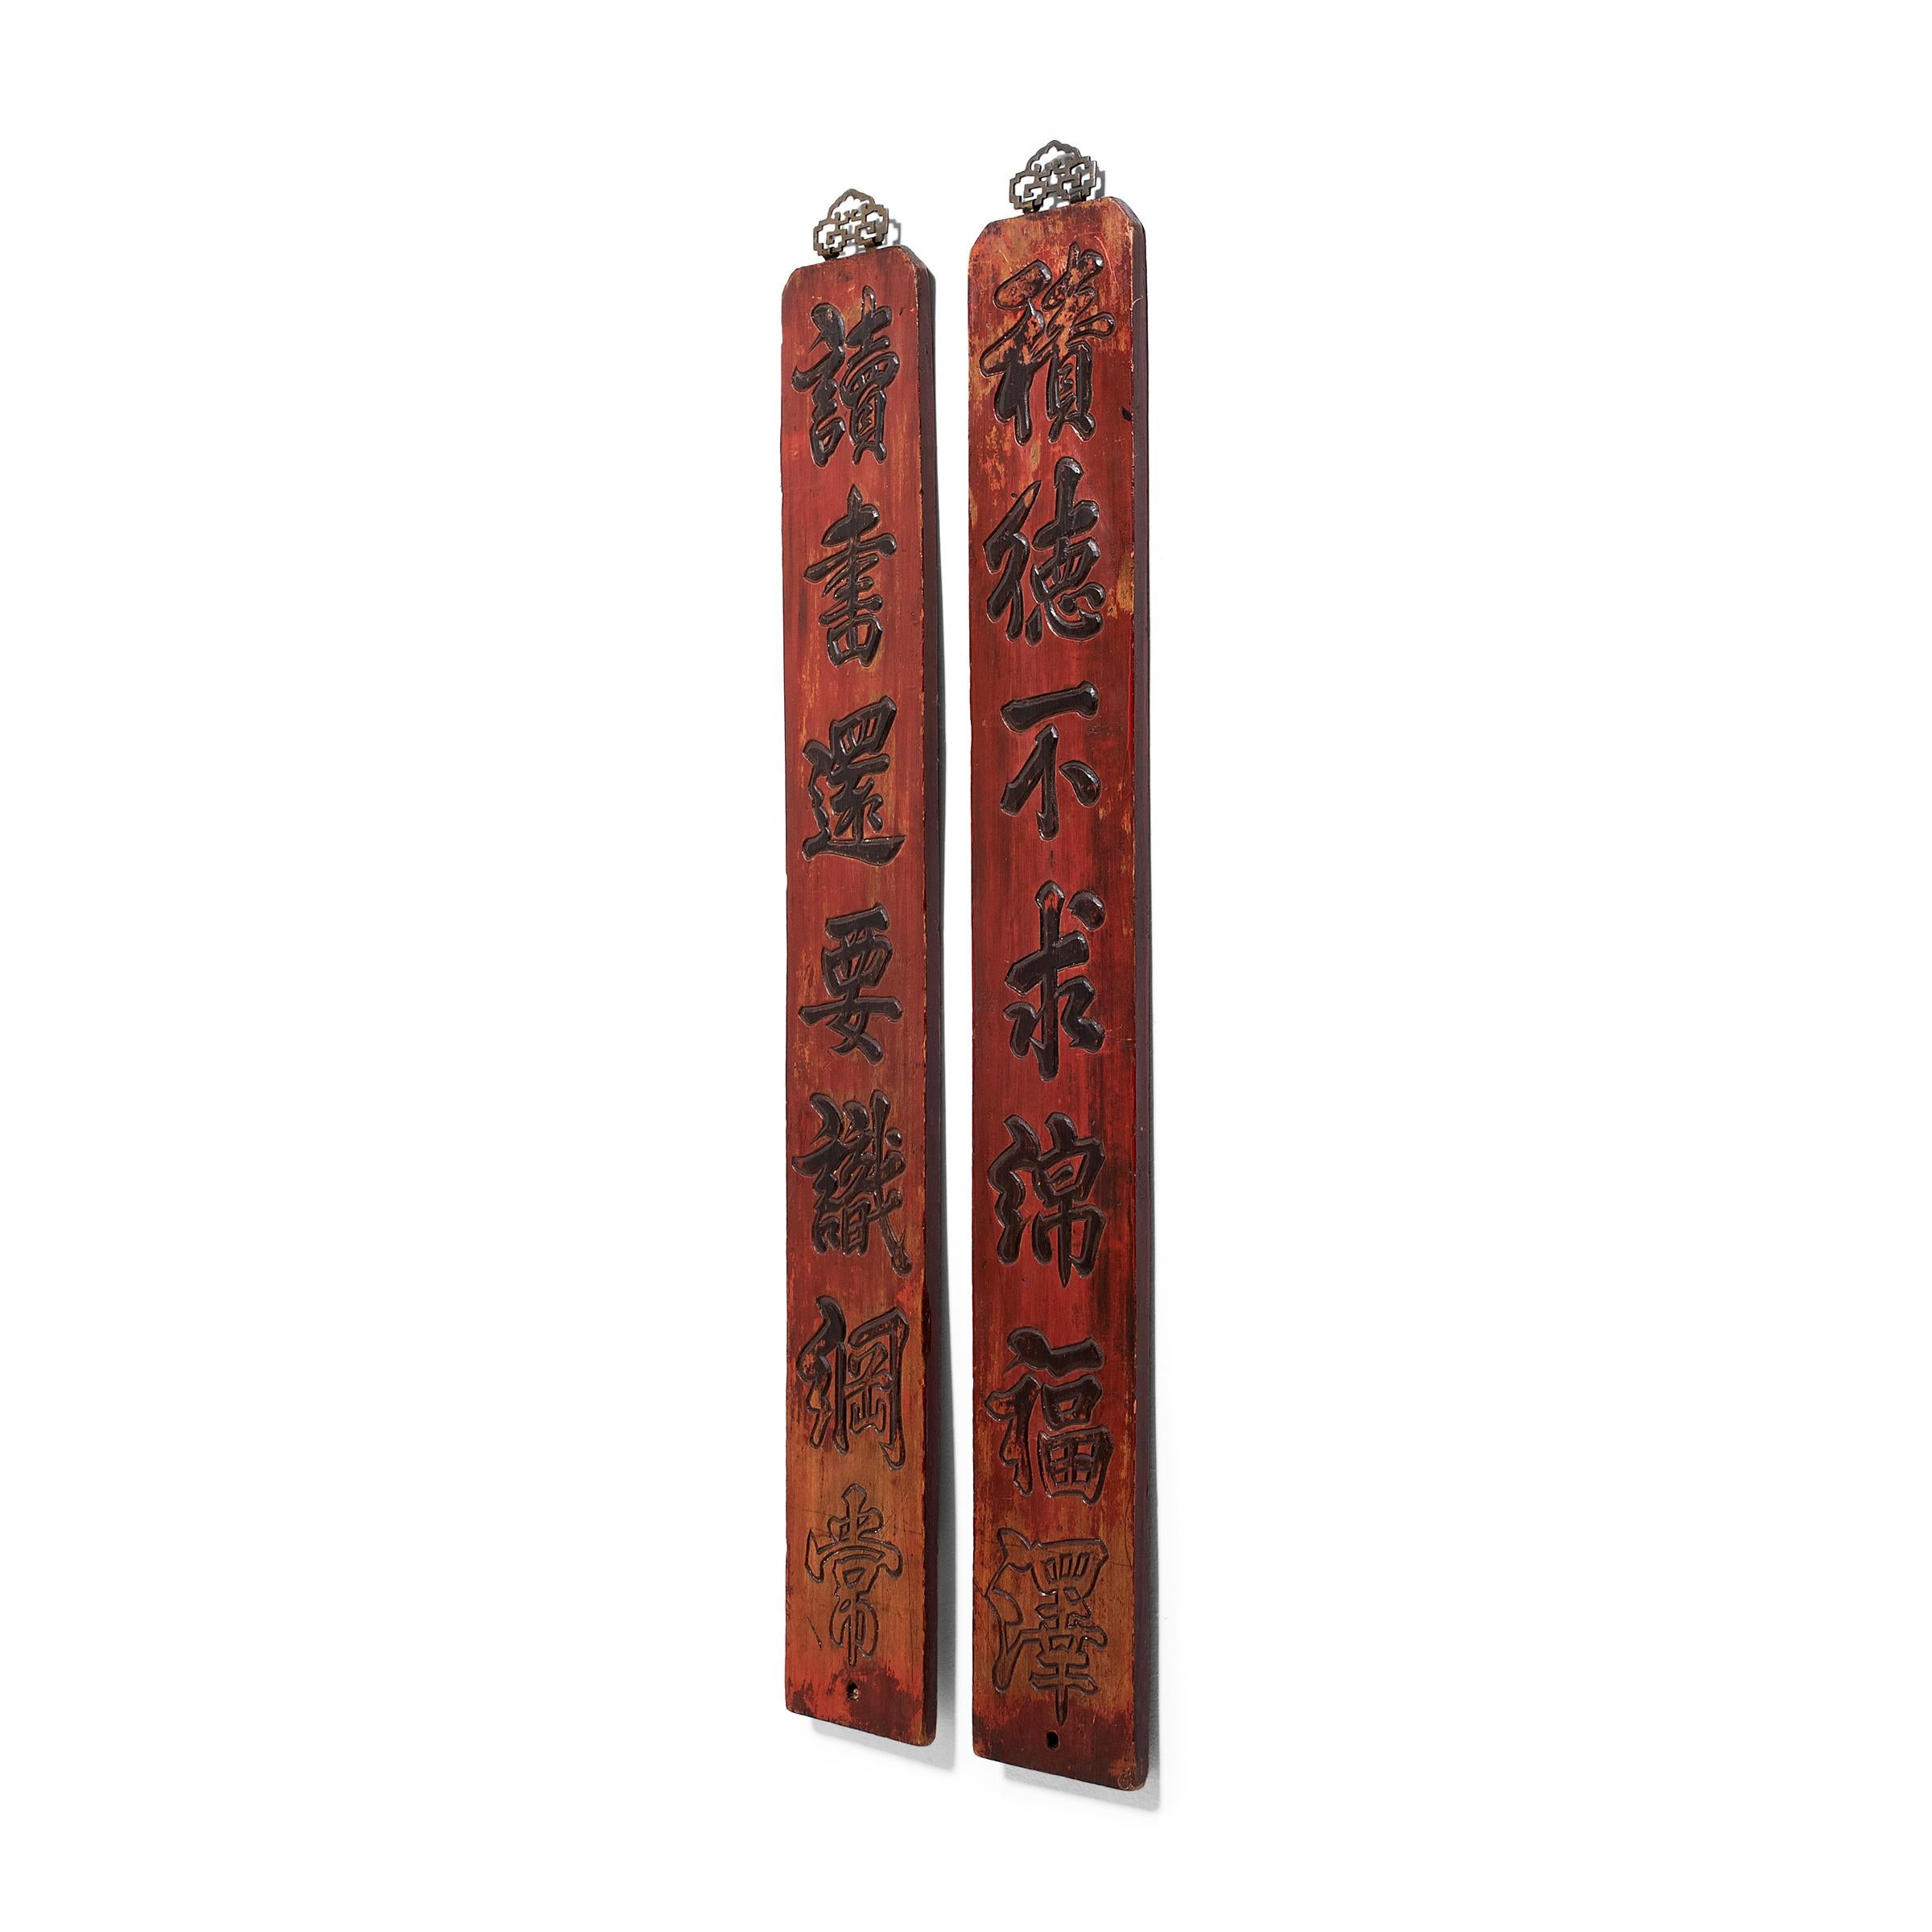 Cette paire de panneaux décoratifs en laque rouge date de la fin du XIXe siècle et est sculptée en relief d'un couplet poétique. Sculpté pour ressembler à une calligraphie à l'encre, le couplet se lit comme suit : 